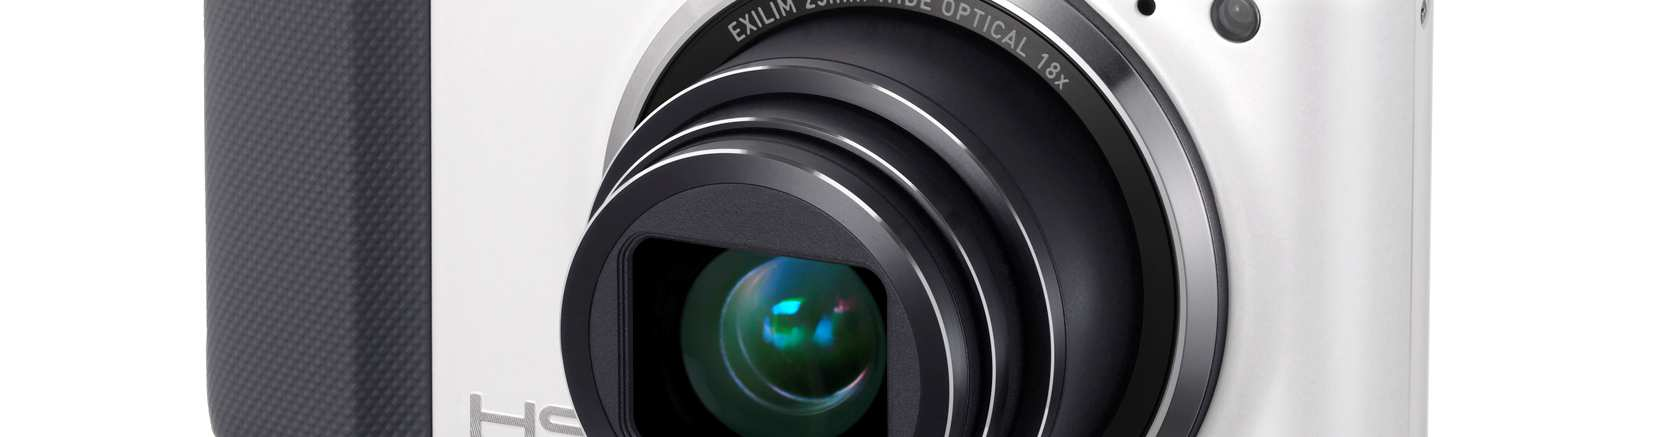 , anuncia hoy el lanzamiento de dos nuevos modelos en la línea de cámaras digitales EXILIM de alta velocidad.